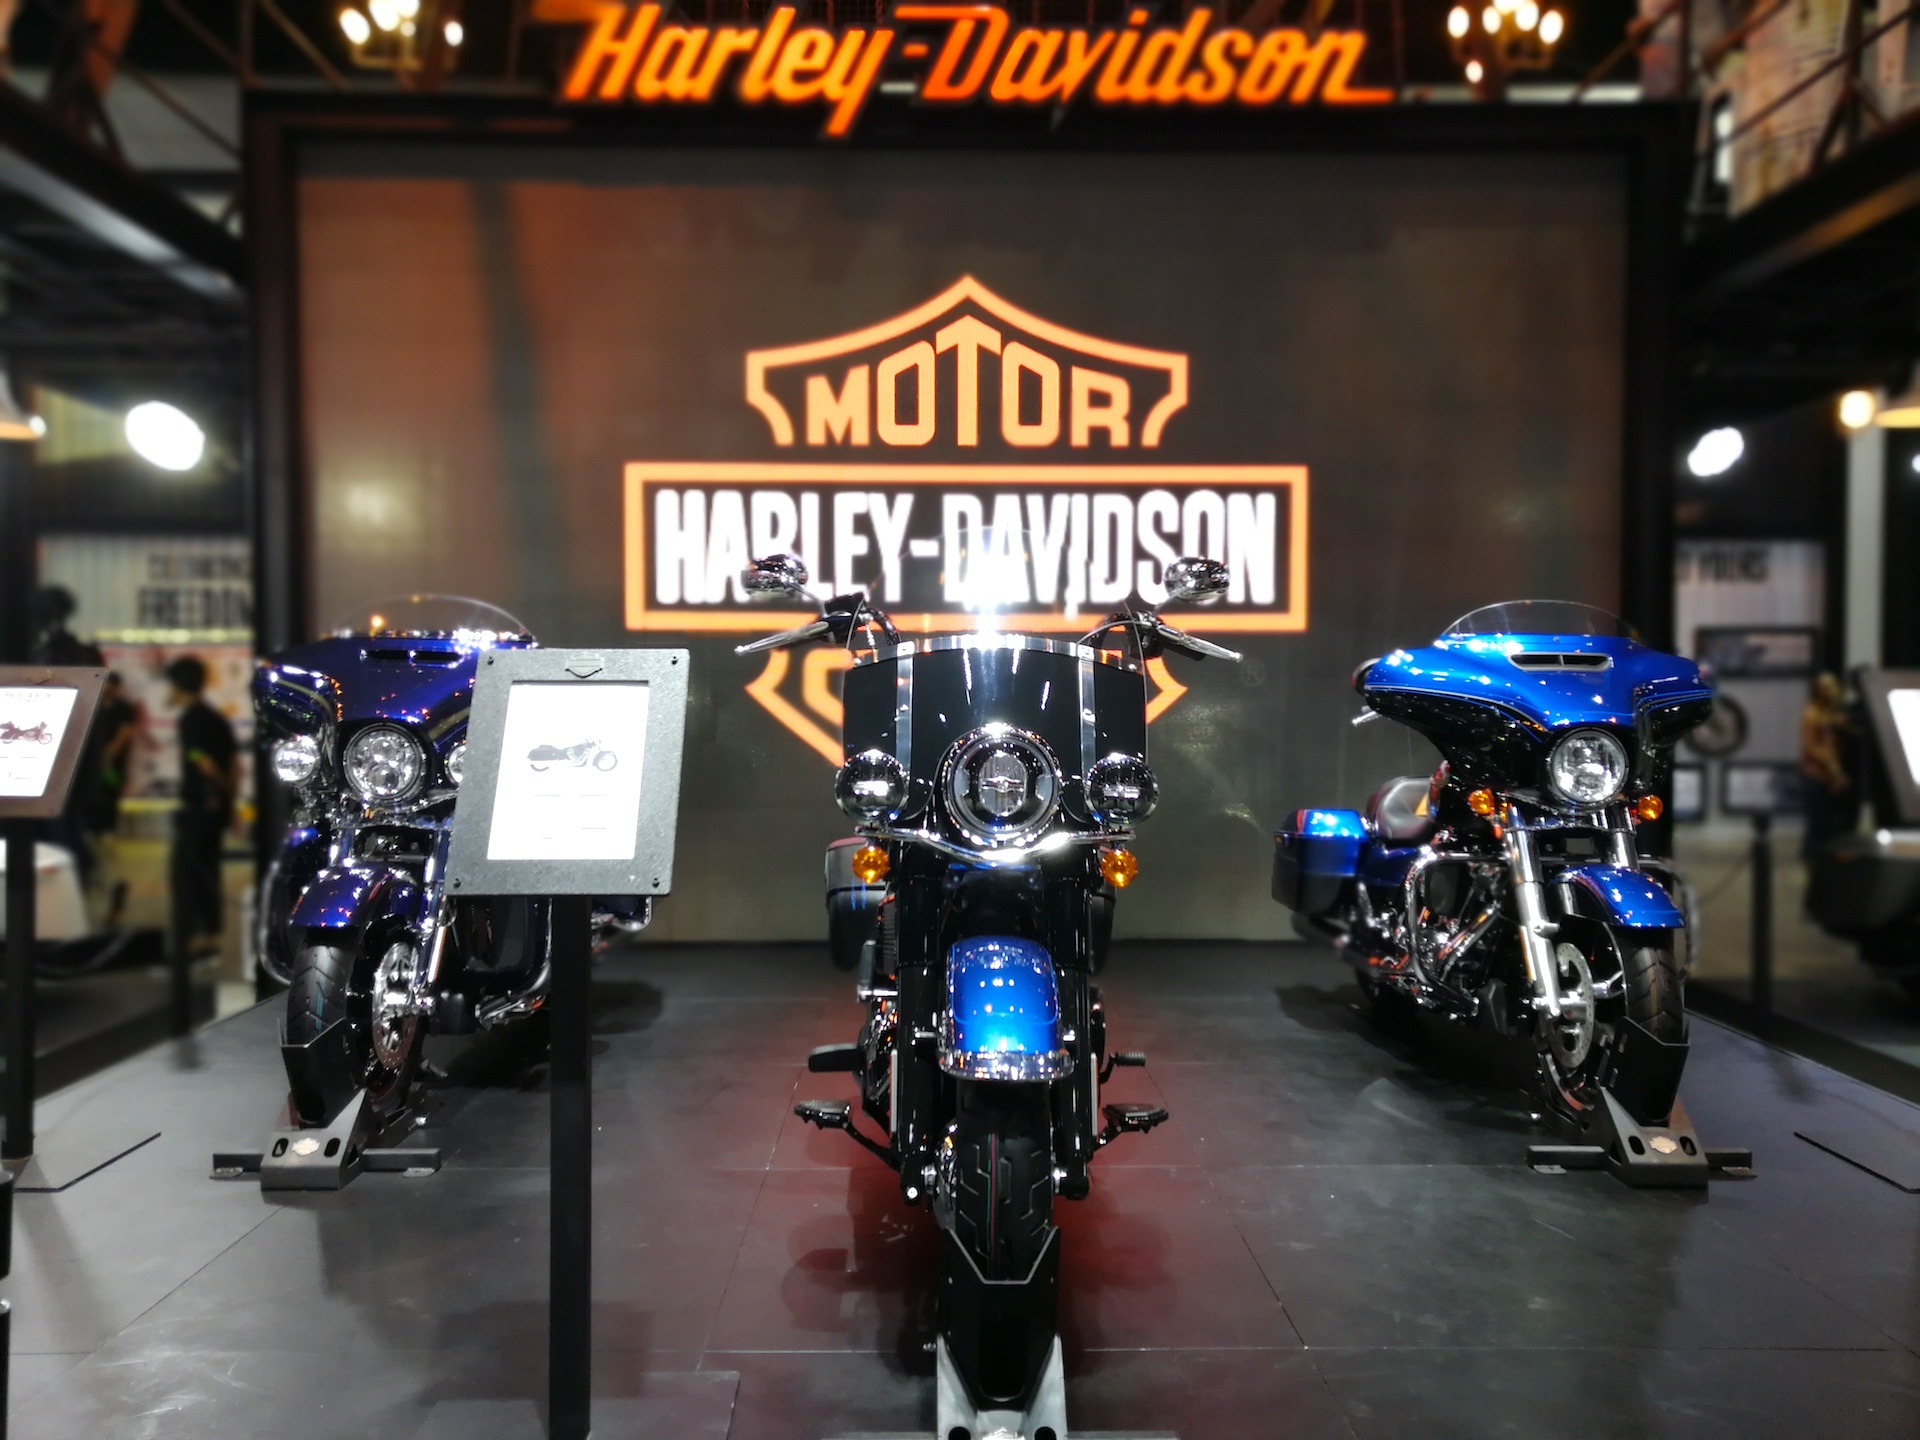 ฮาร์ลีย์-เดวิดสัน® เร่งเครื่องแผนกลยุทธ์เพื่อสร้างนักขี่มอเตอร์ไซค์รุ่นใหม่ทั่วโลก